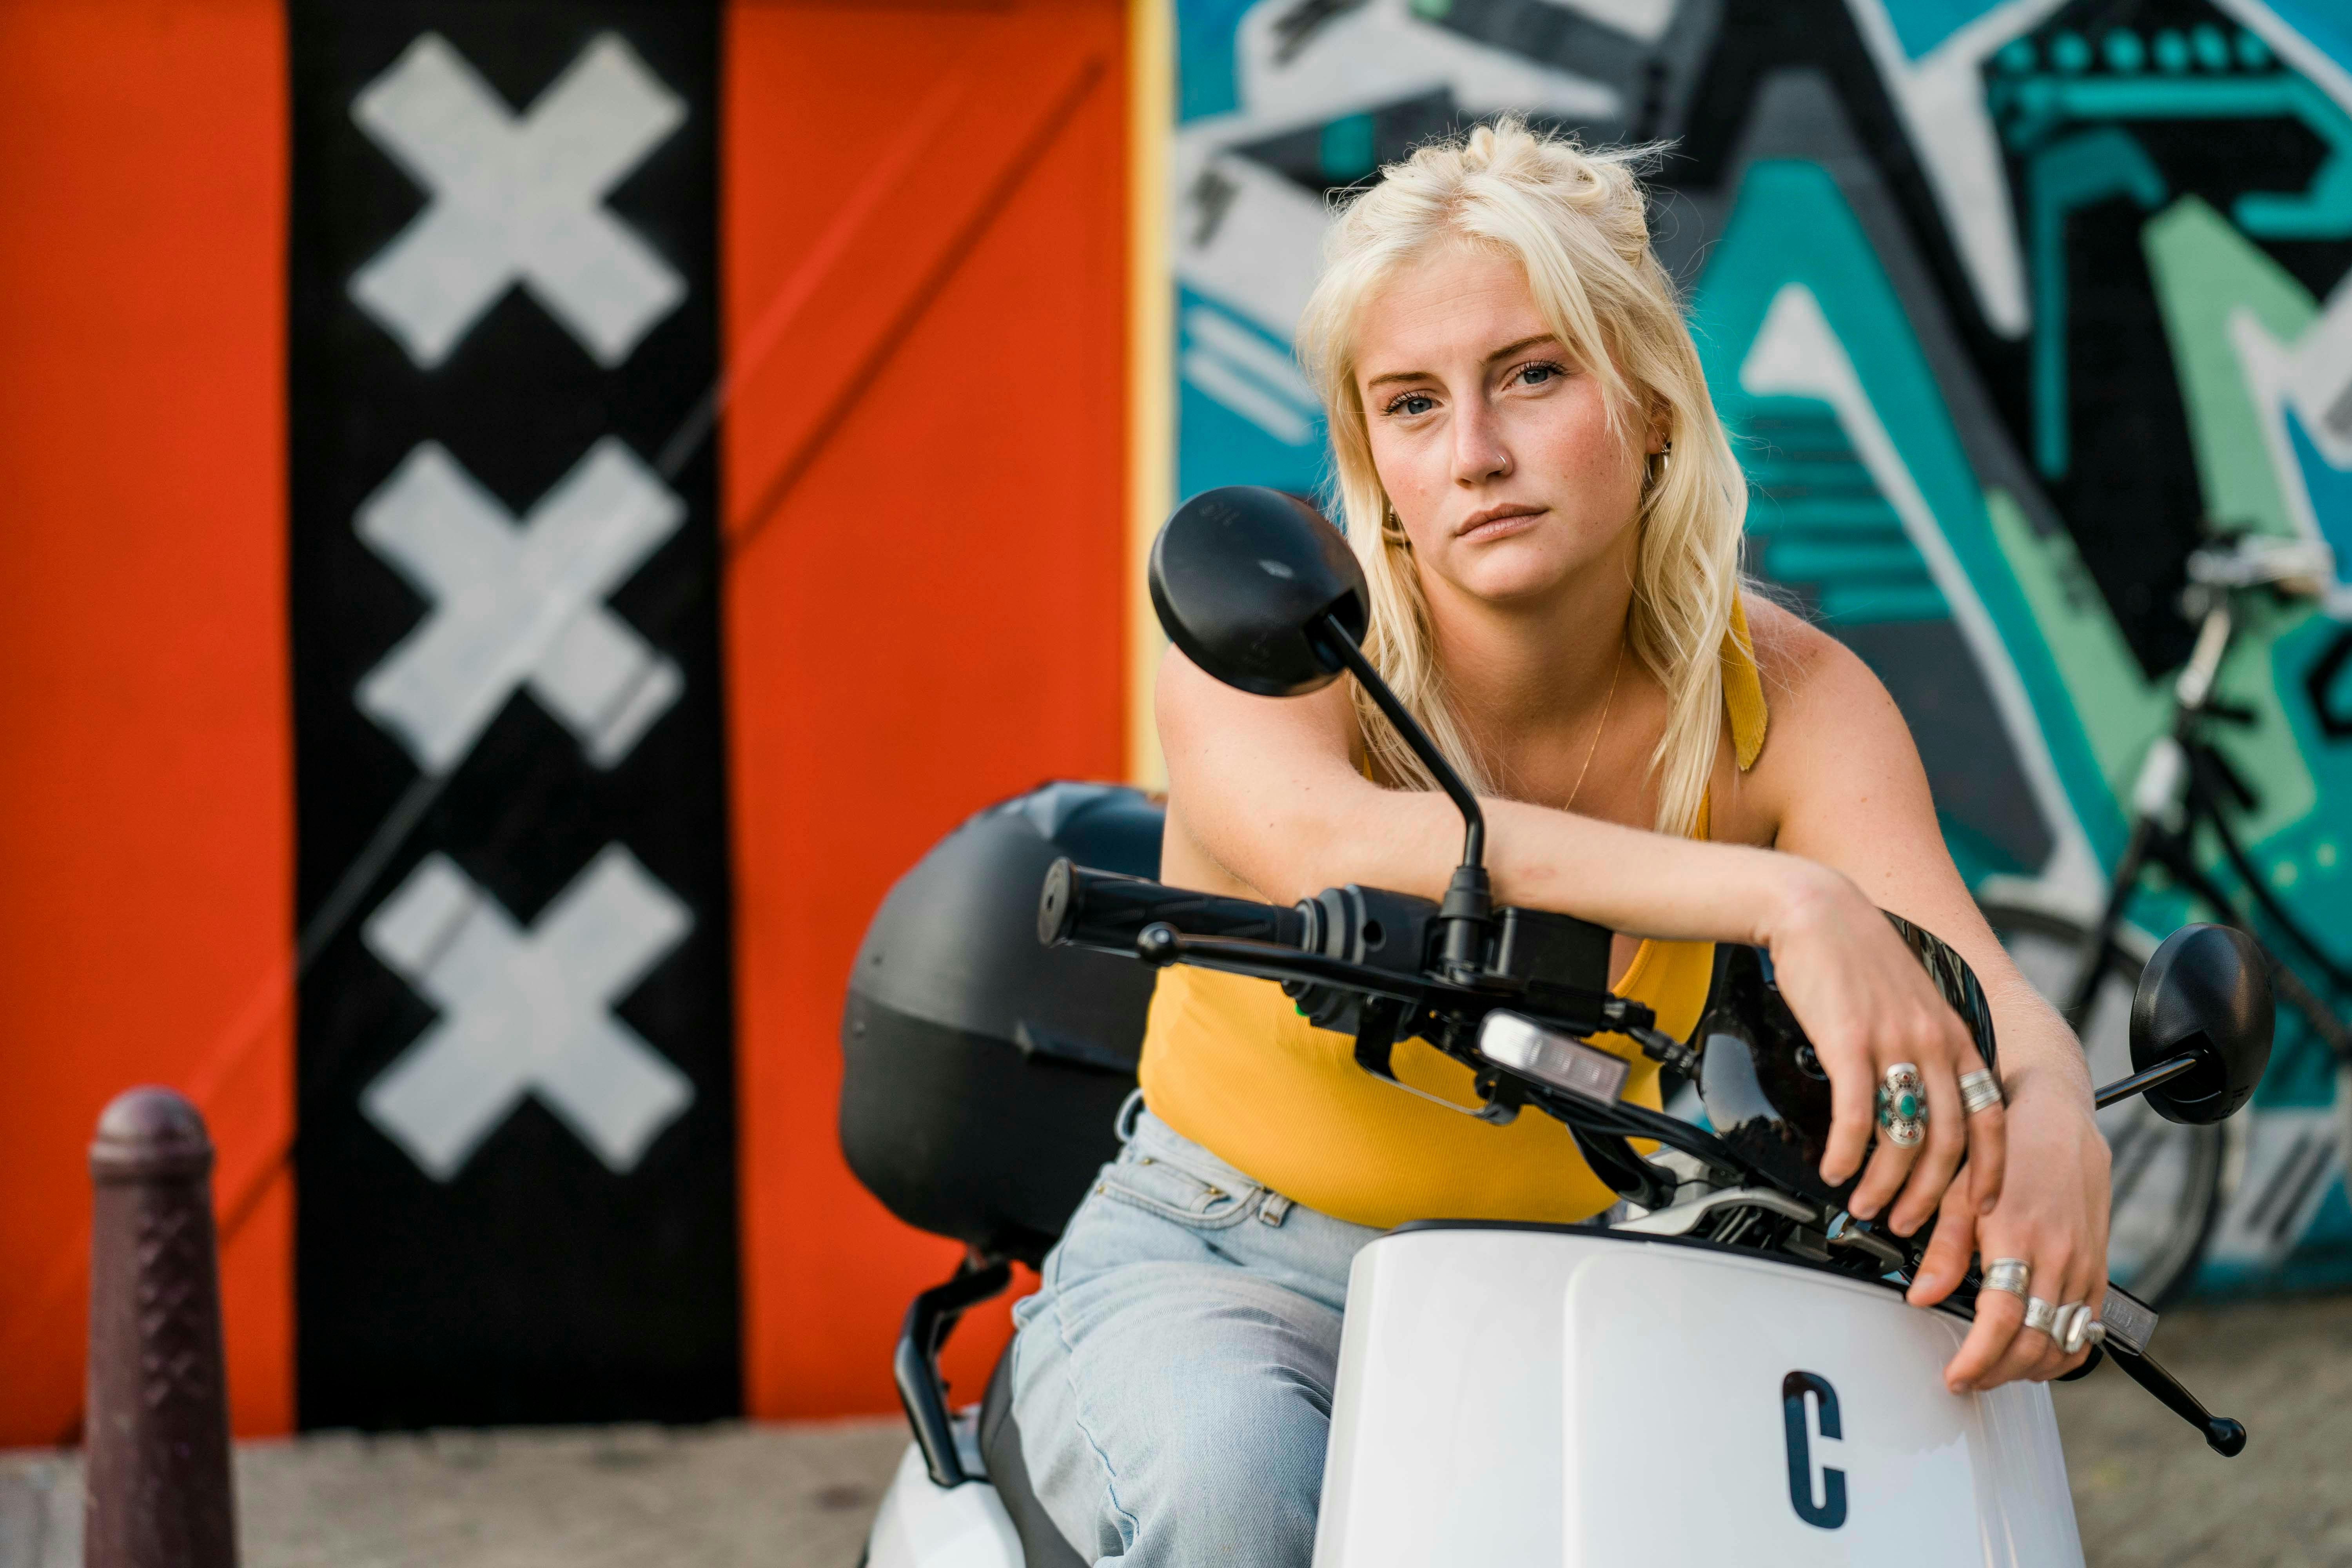 Elektrische deelscooter aanbieder Check lanceert in Amsterdam